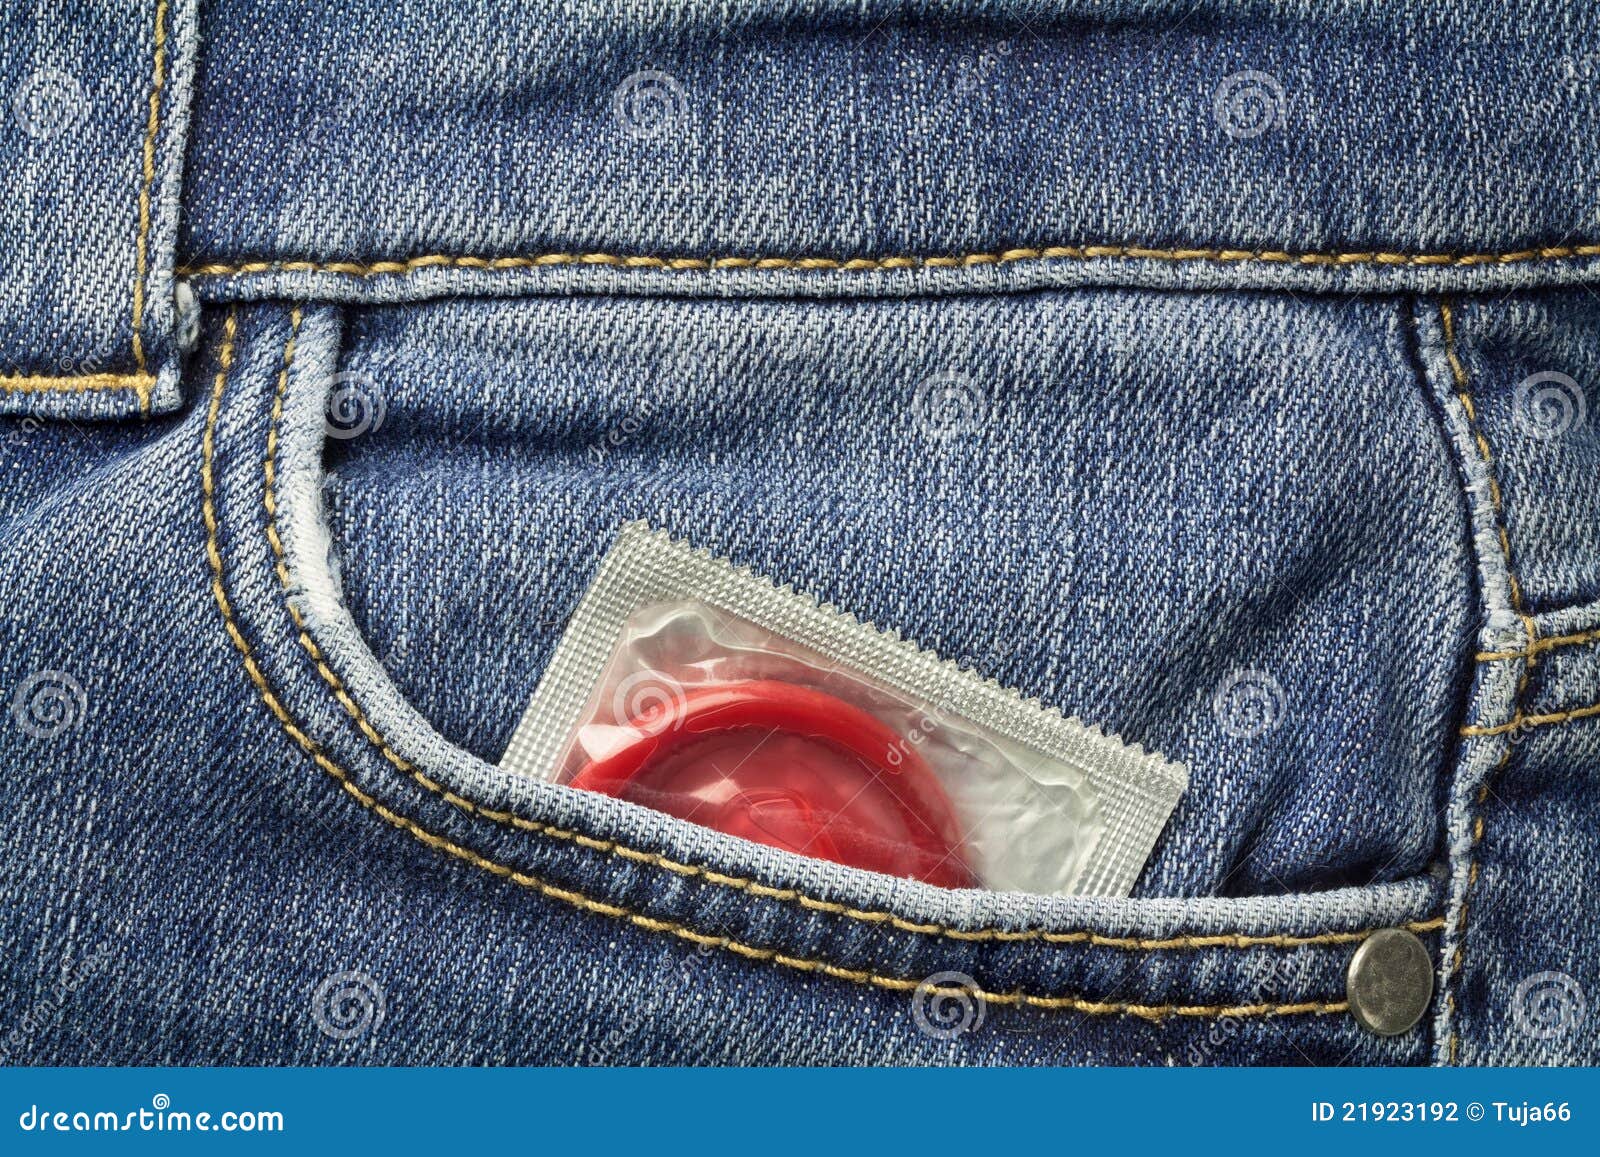 Temper Xxx Video Condom Laga Ke Lamba Lamba Lund - 4,736 Condom Stock Photos - Free & Royalty-Free Stock Photos from Dreamstime